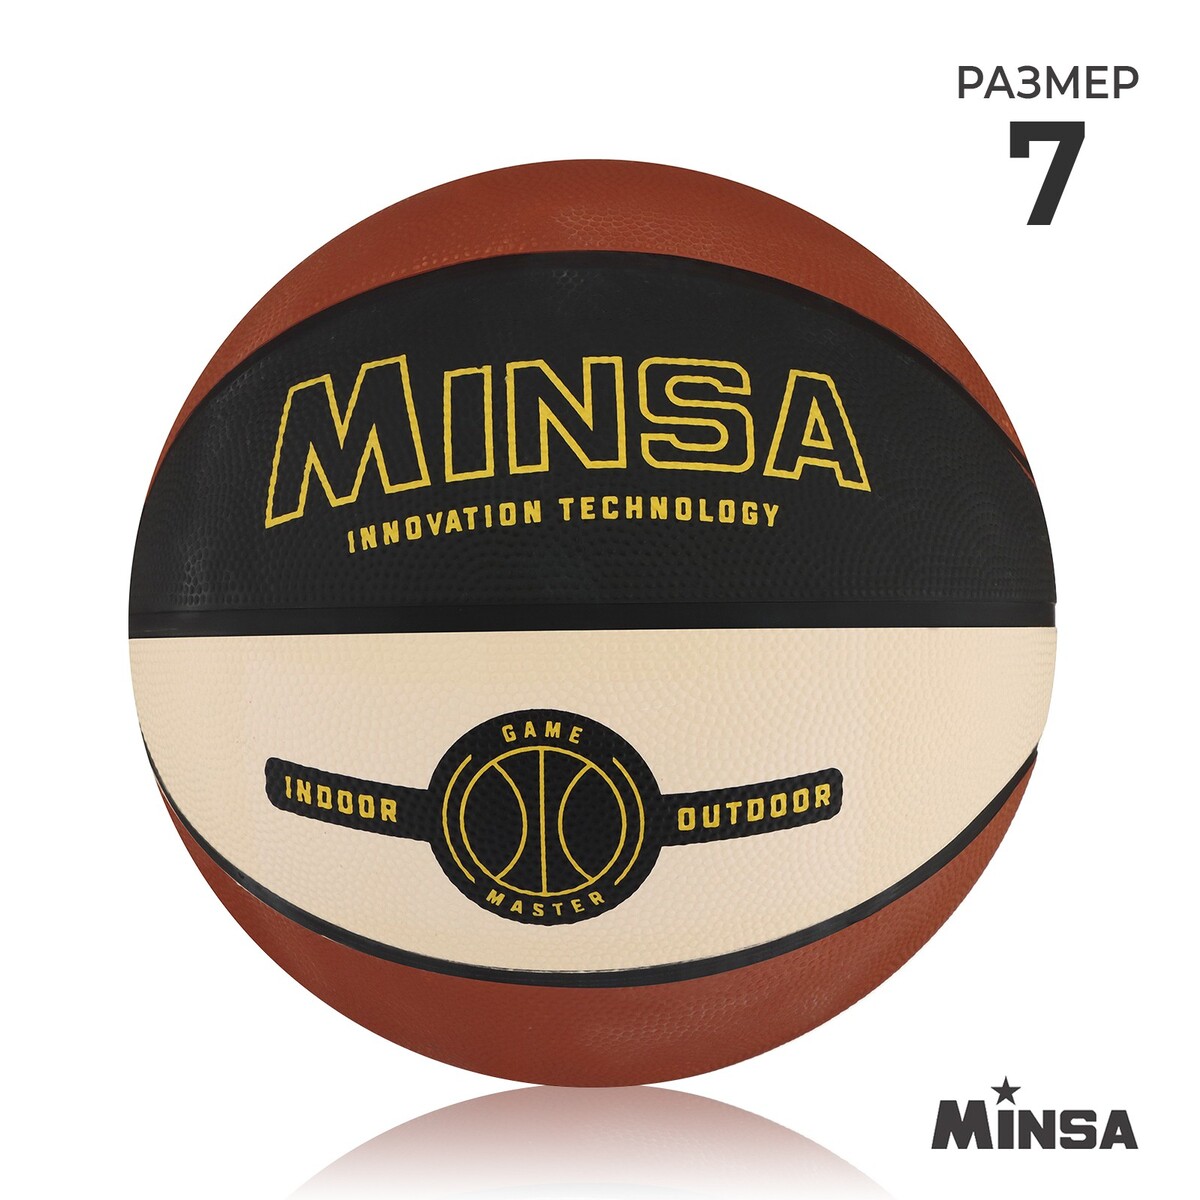 Мяч баскетбольный minsa, пвх, клееный, 8 панелей, р. 7 мяч баскетбольный molten b7g3800 р 7